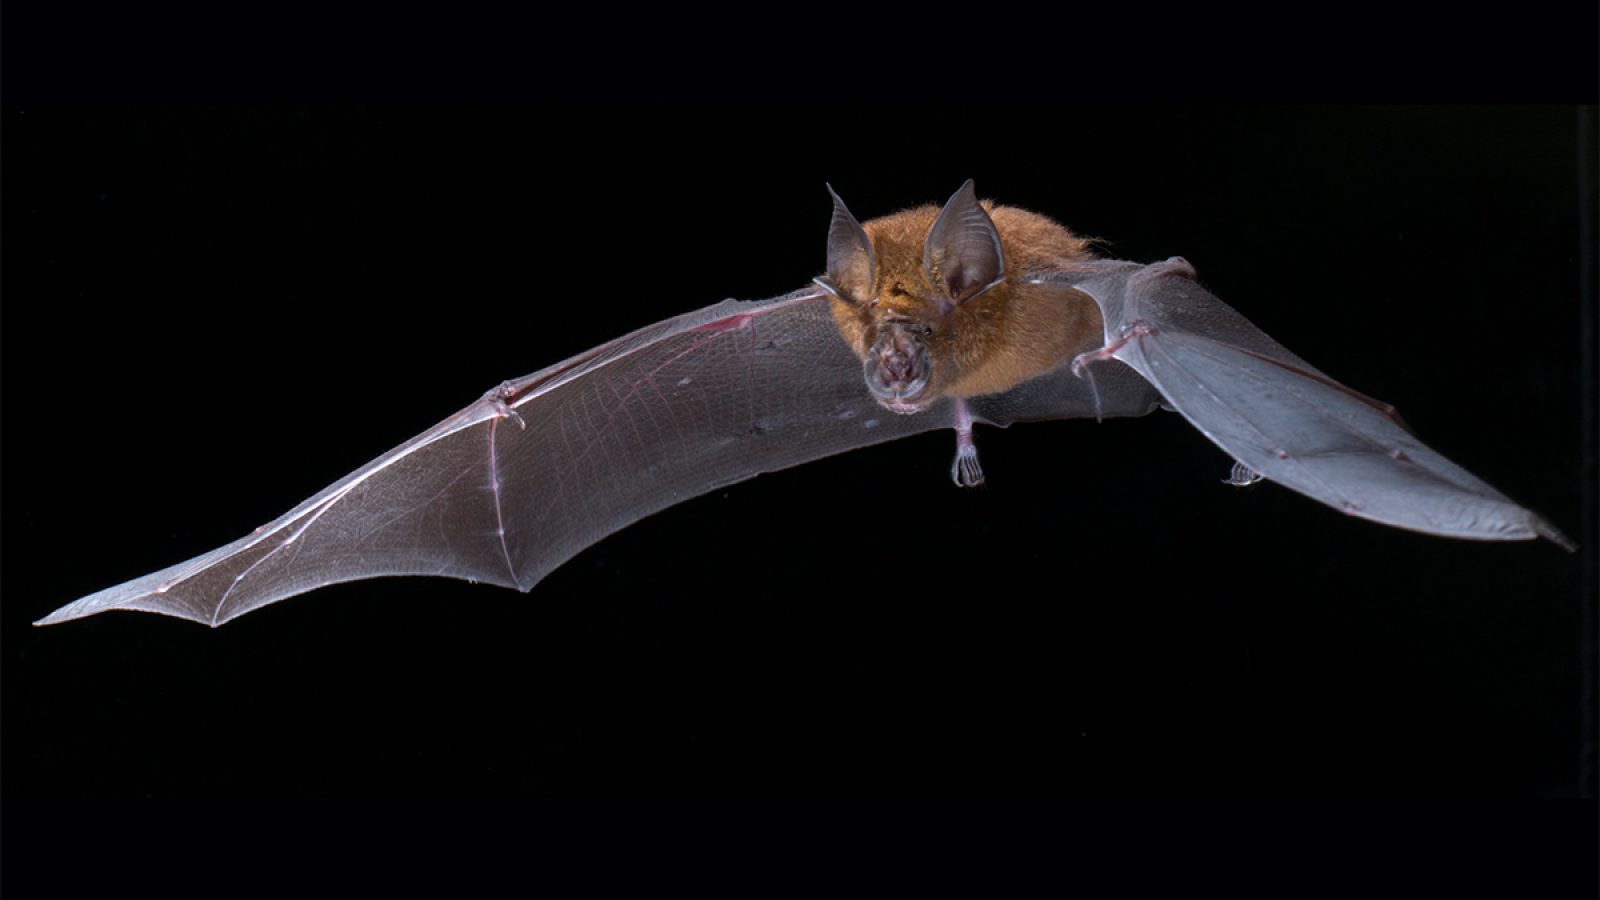 An image of a bat.